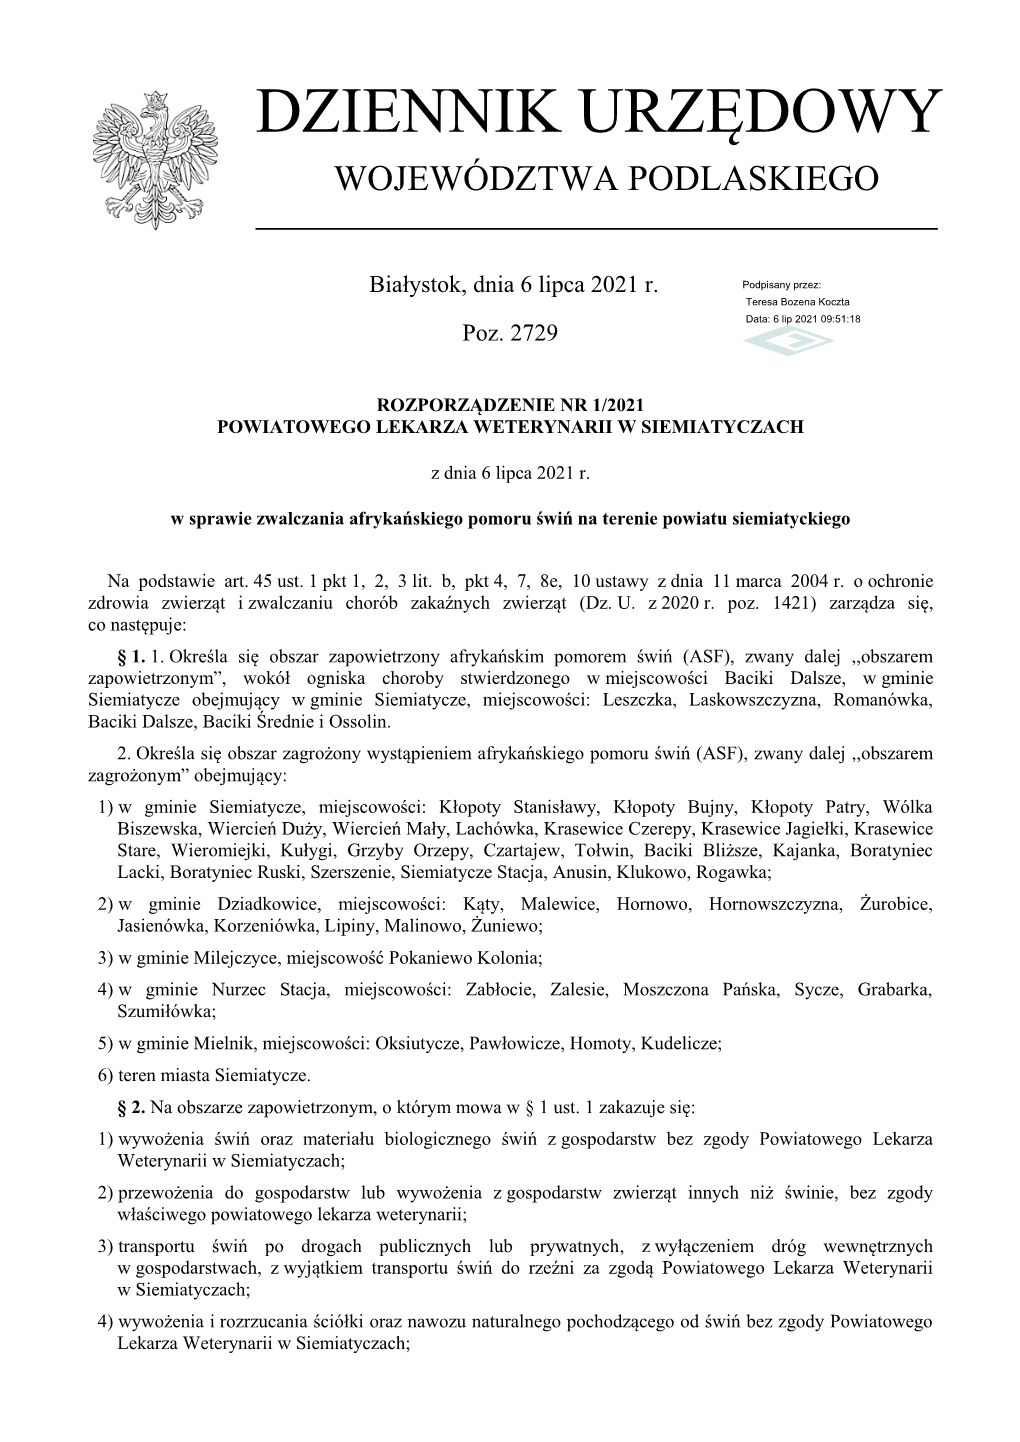 Rozporządzenie Nr 1/2021 Powiatowego Lekarza Weterynarii W Siemiatyczach